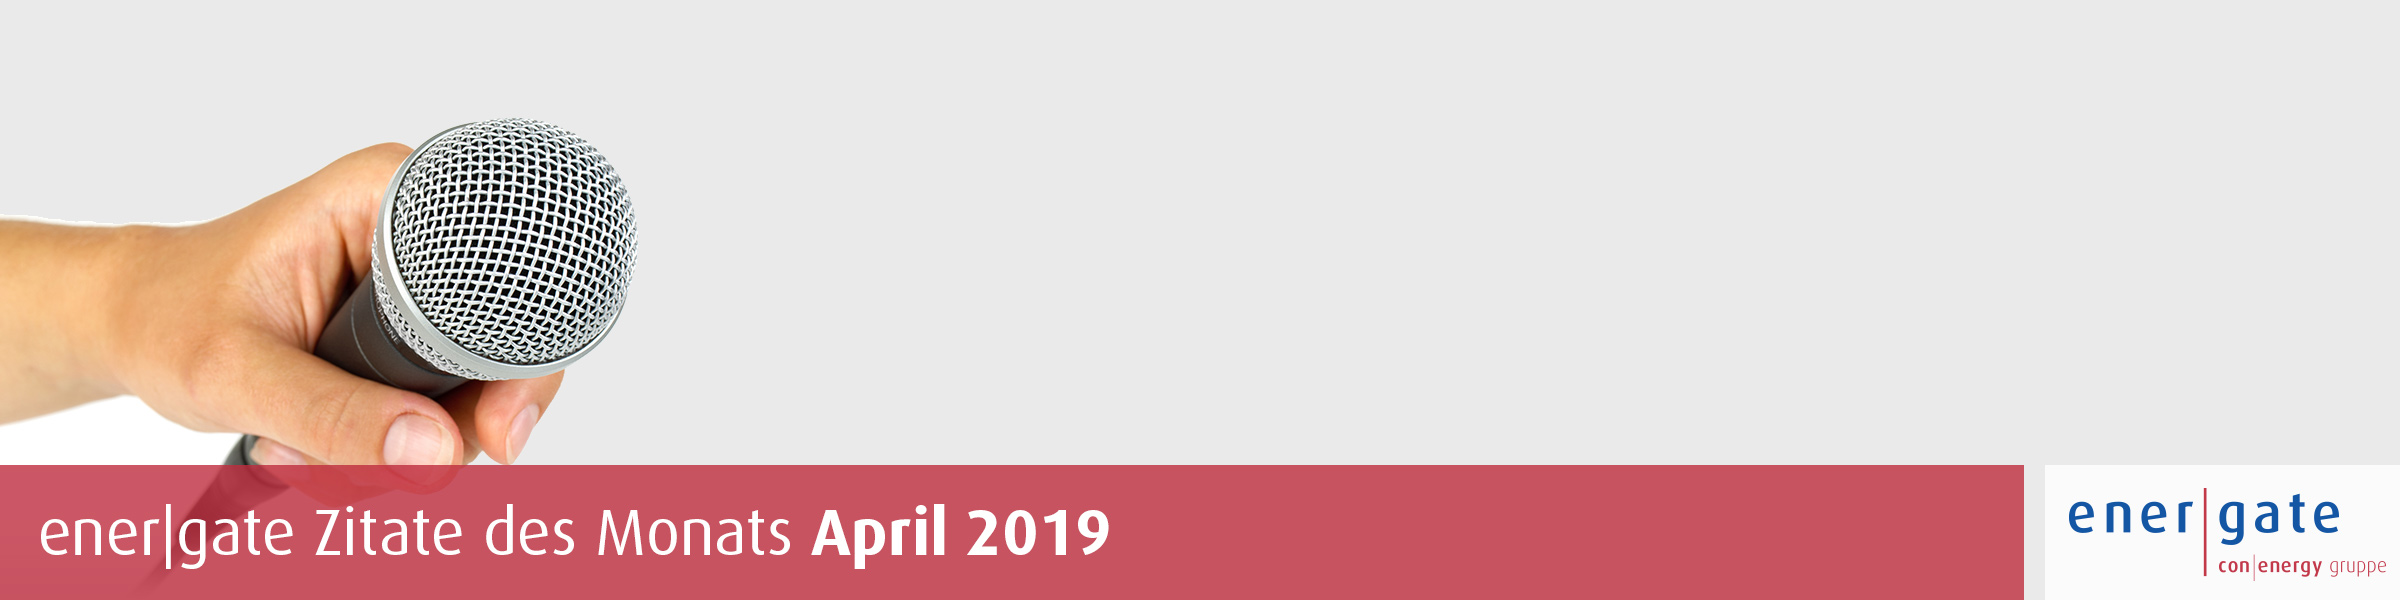 energate Zitate des Monats April 2019